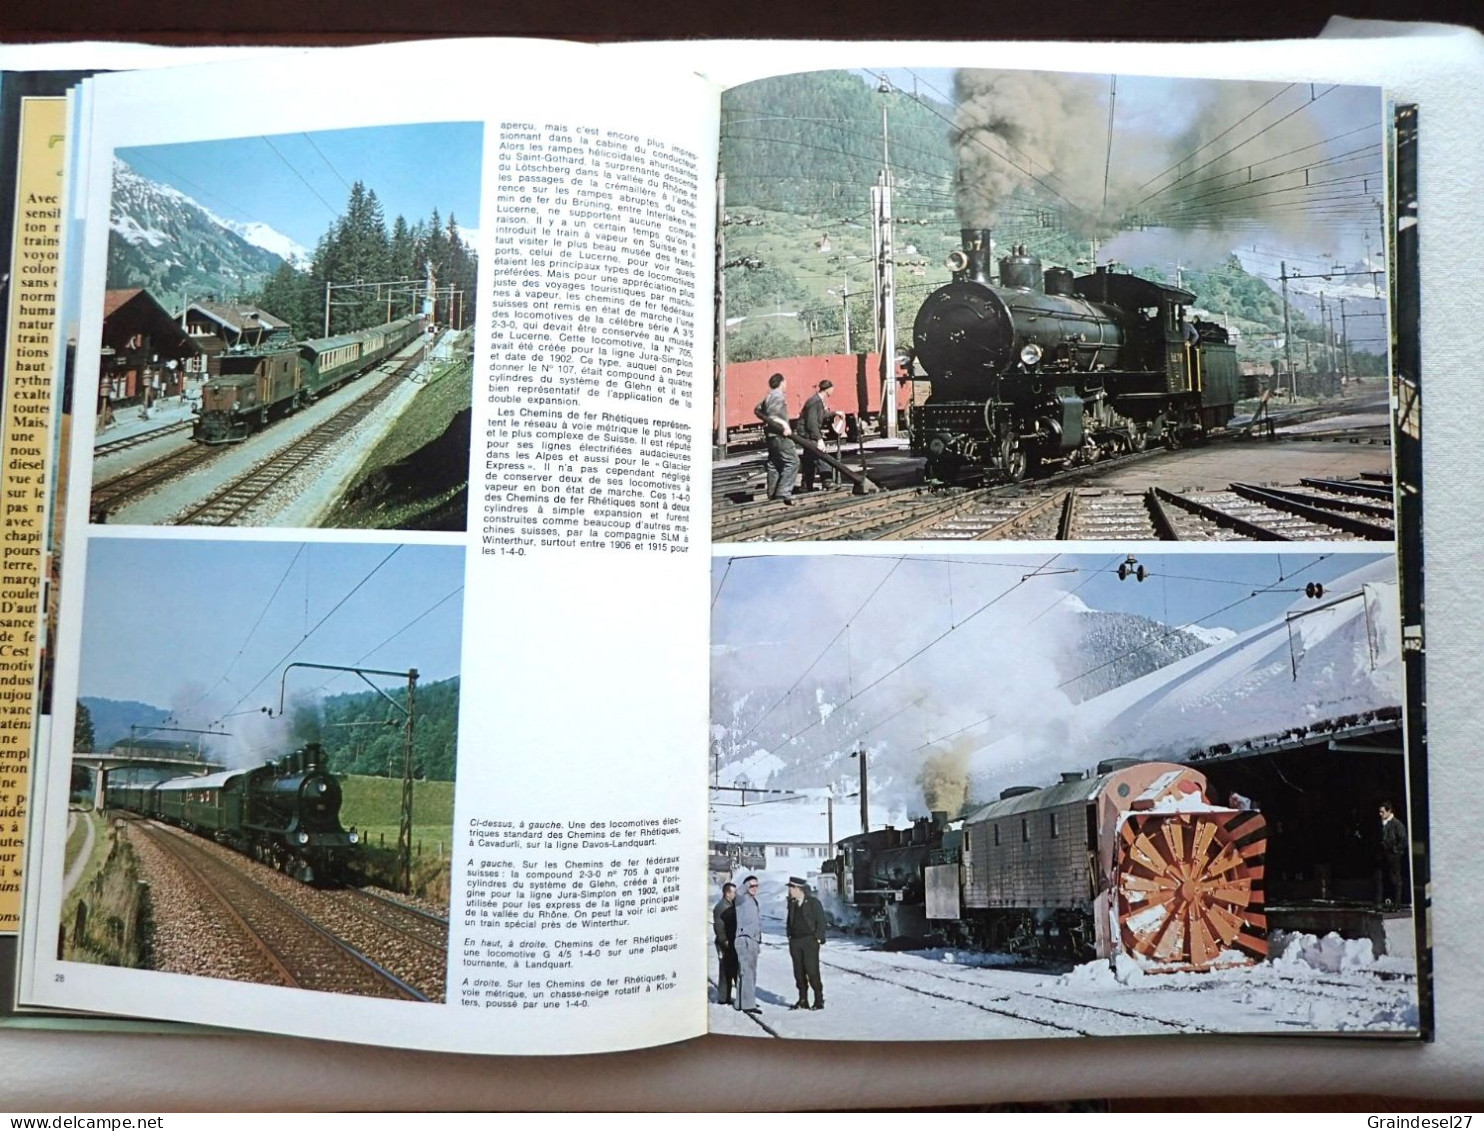 Le monde fascinant des trains de David S. Hamilton Editions Grund 1977